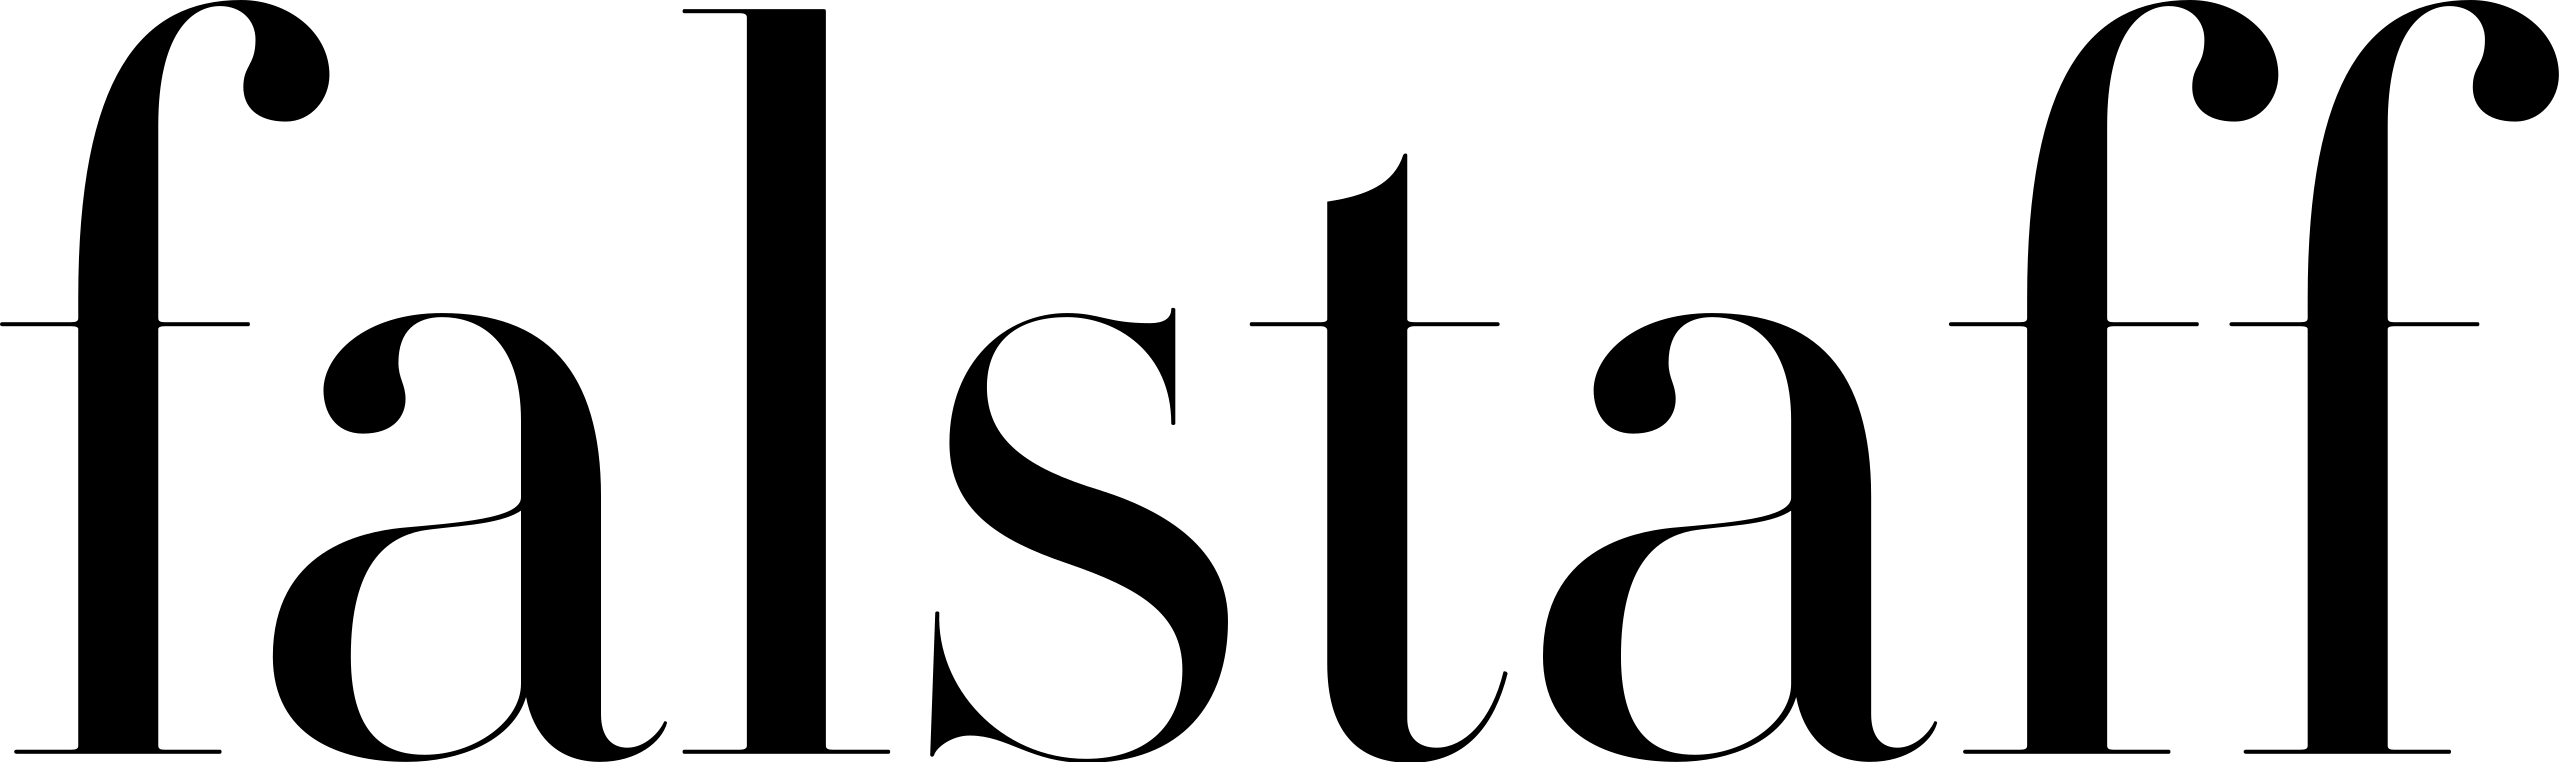 Falstaff - logo